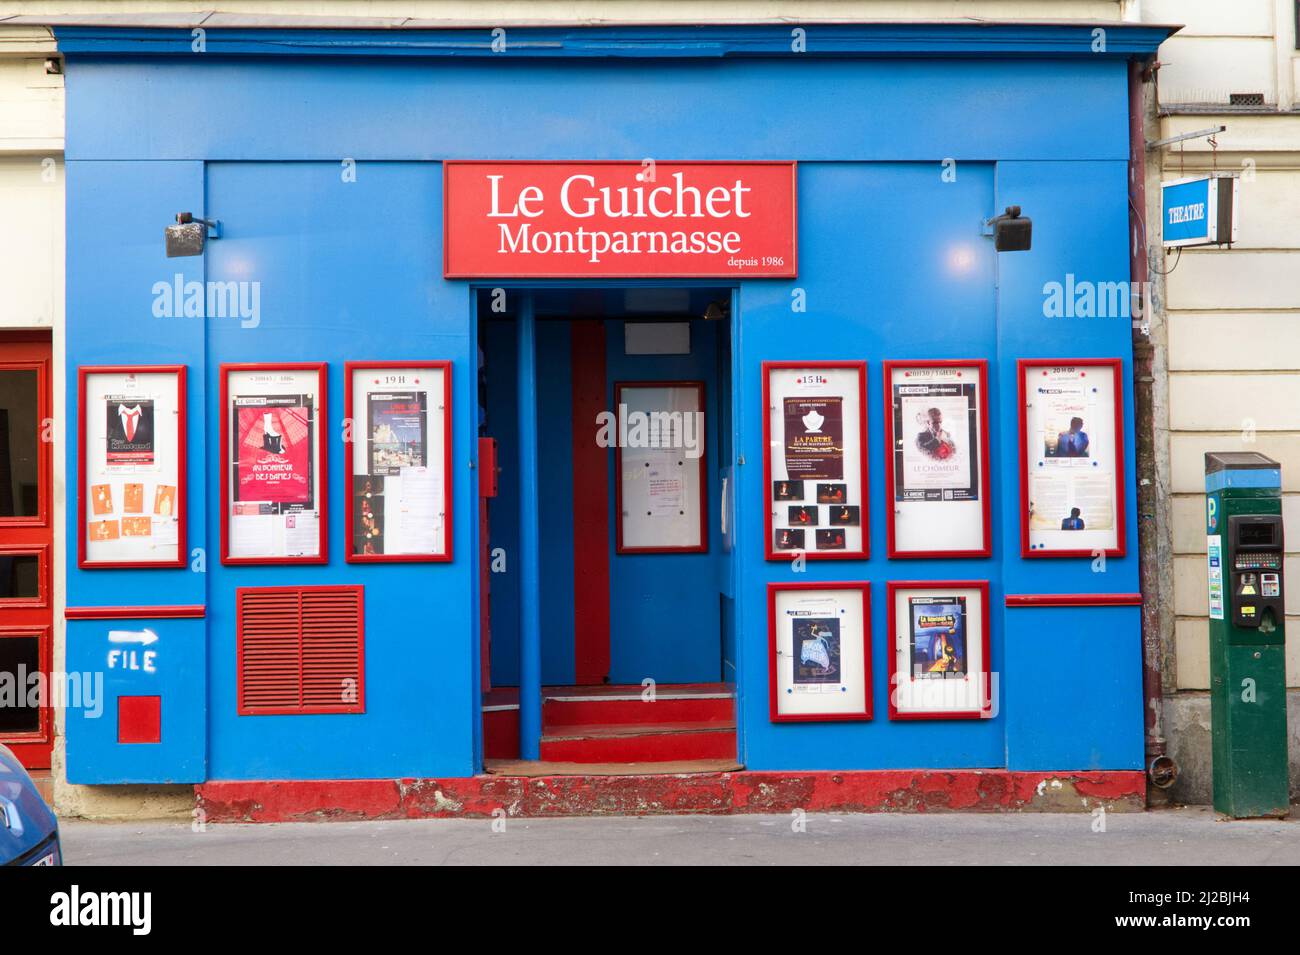 Le Guichet - little theatre in Montparnasse - Paris Stock Photo